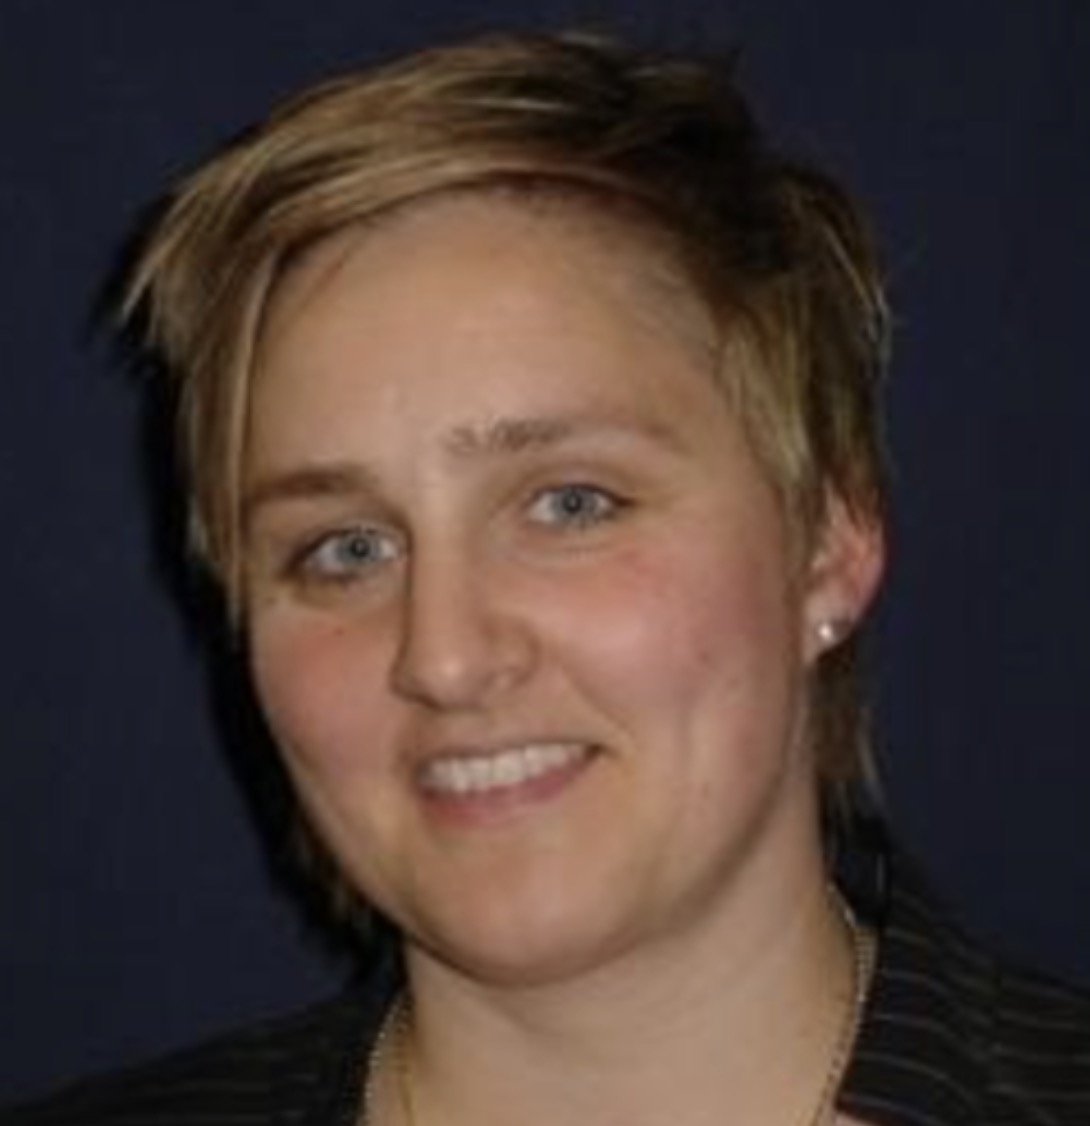 Jasmin Dieckhoener